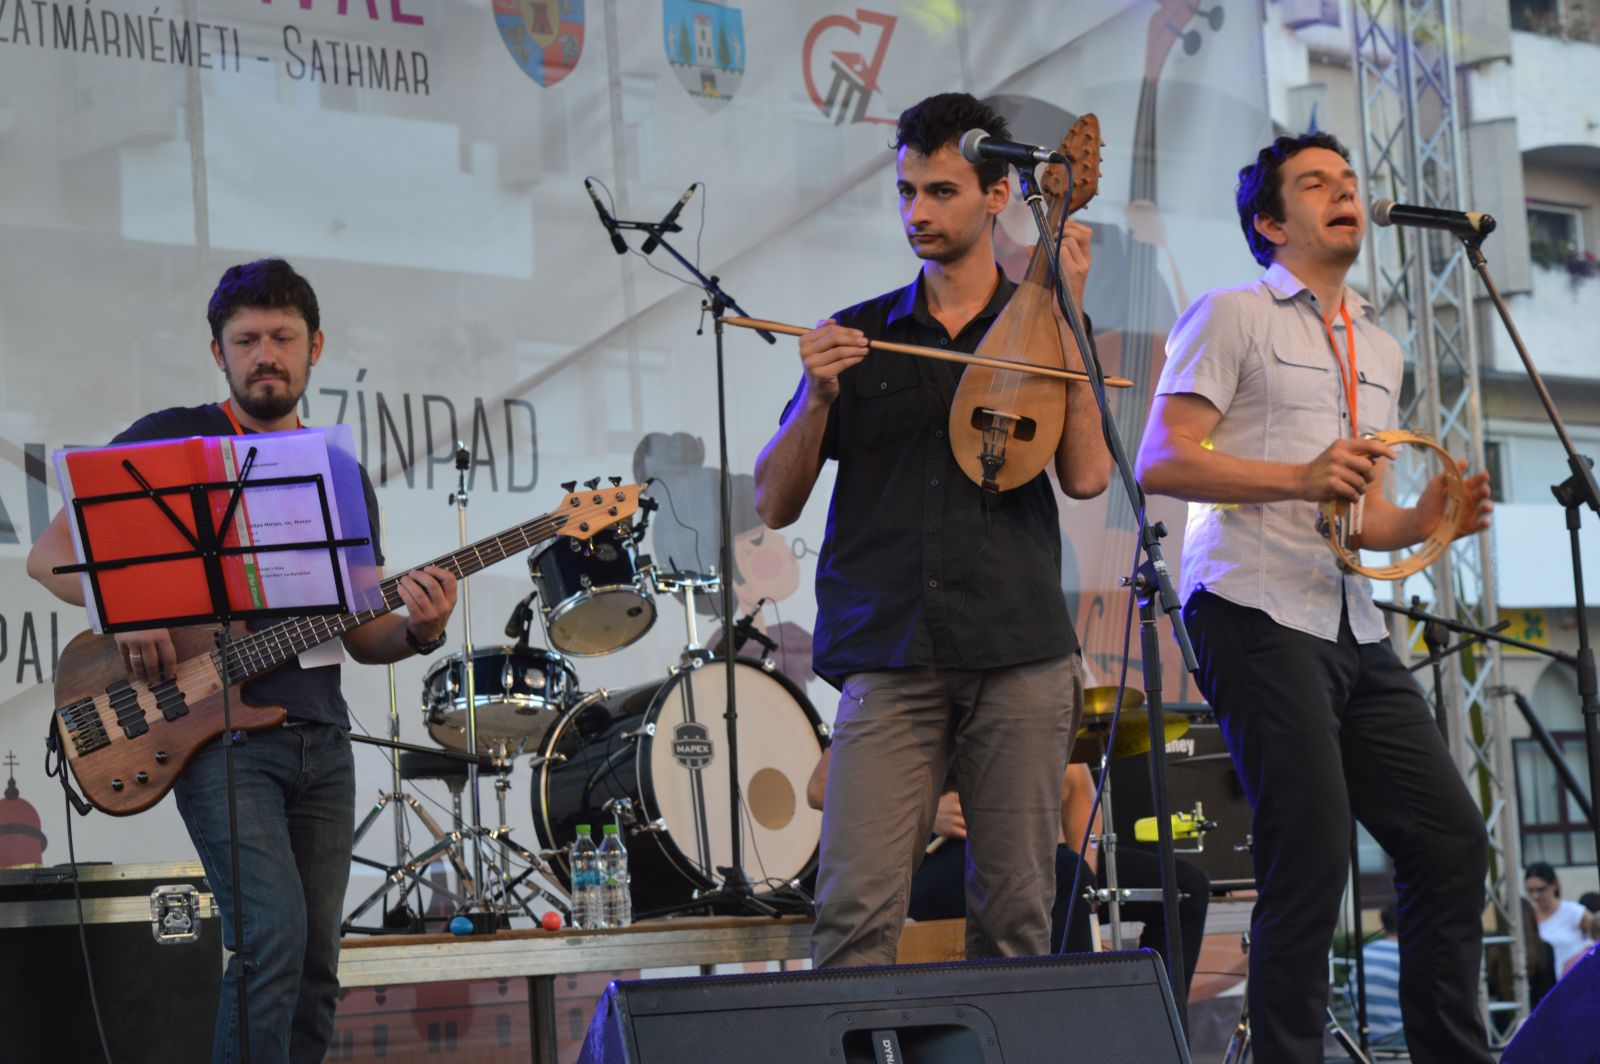 Éppen a bolgár X-ray Band koncertezik, akik hagyományos hangszereken dolgoznak fel mindenkori dalokat.
